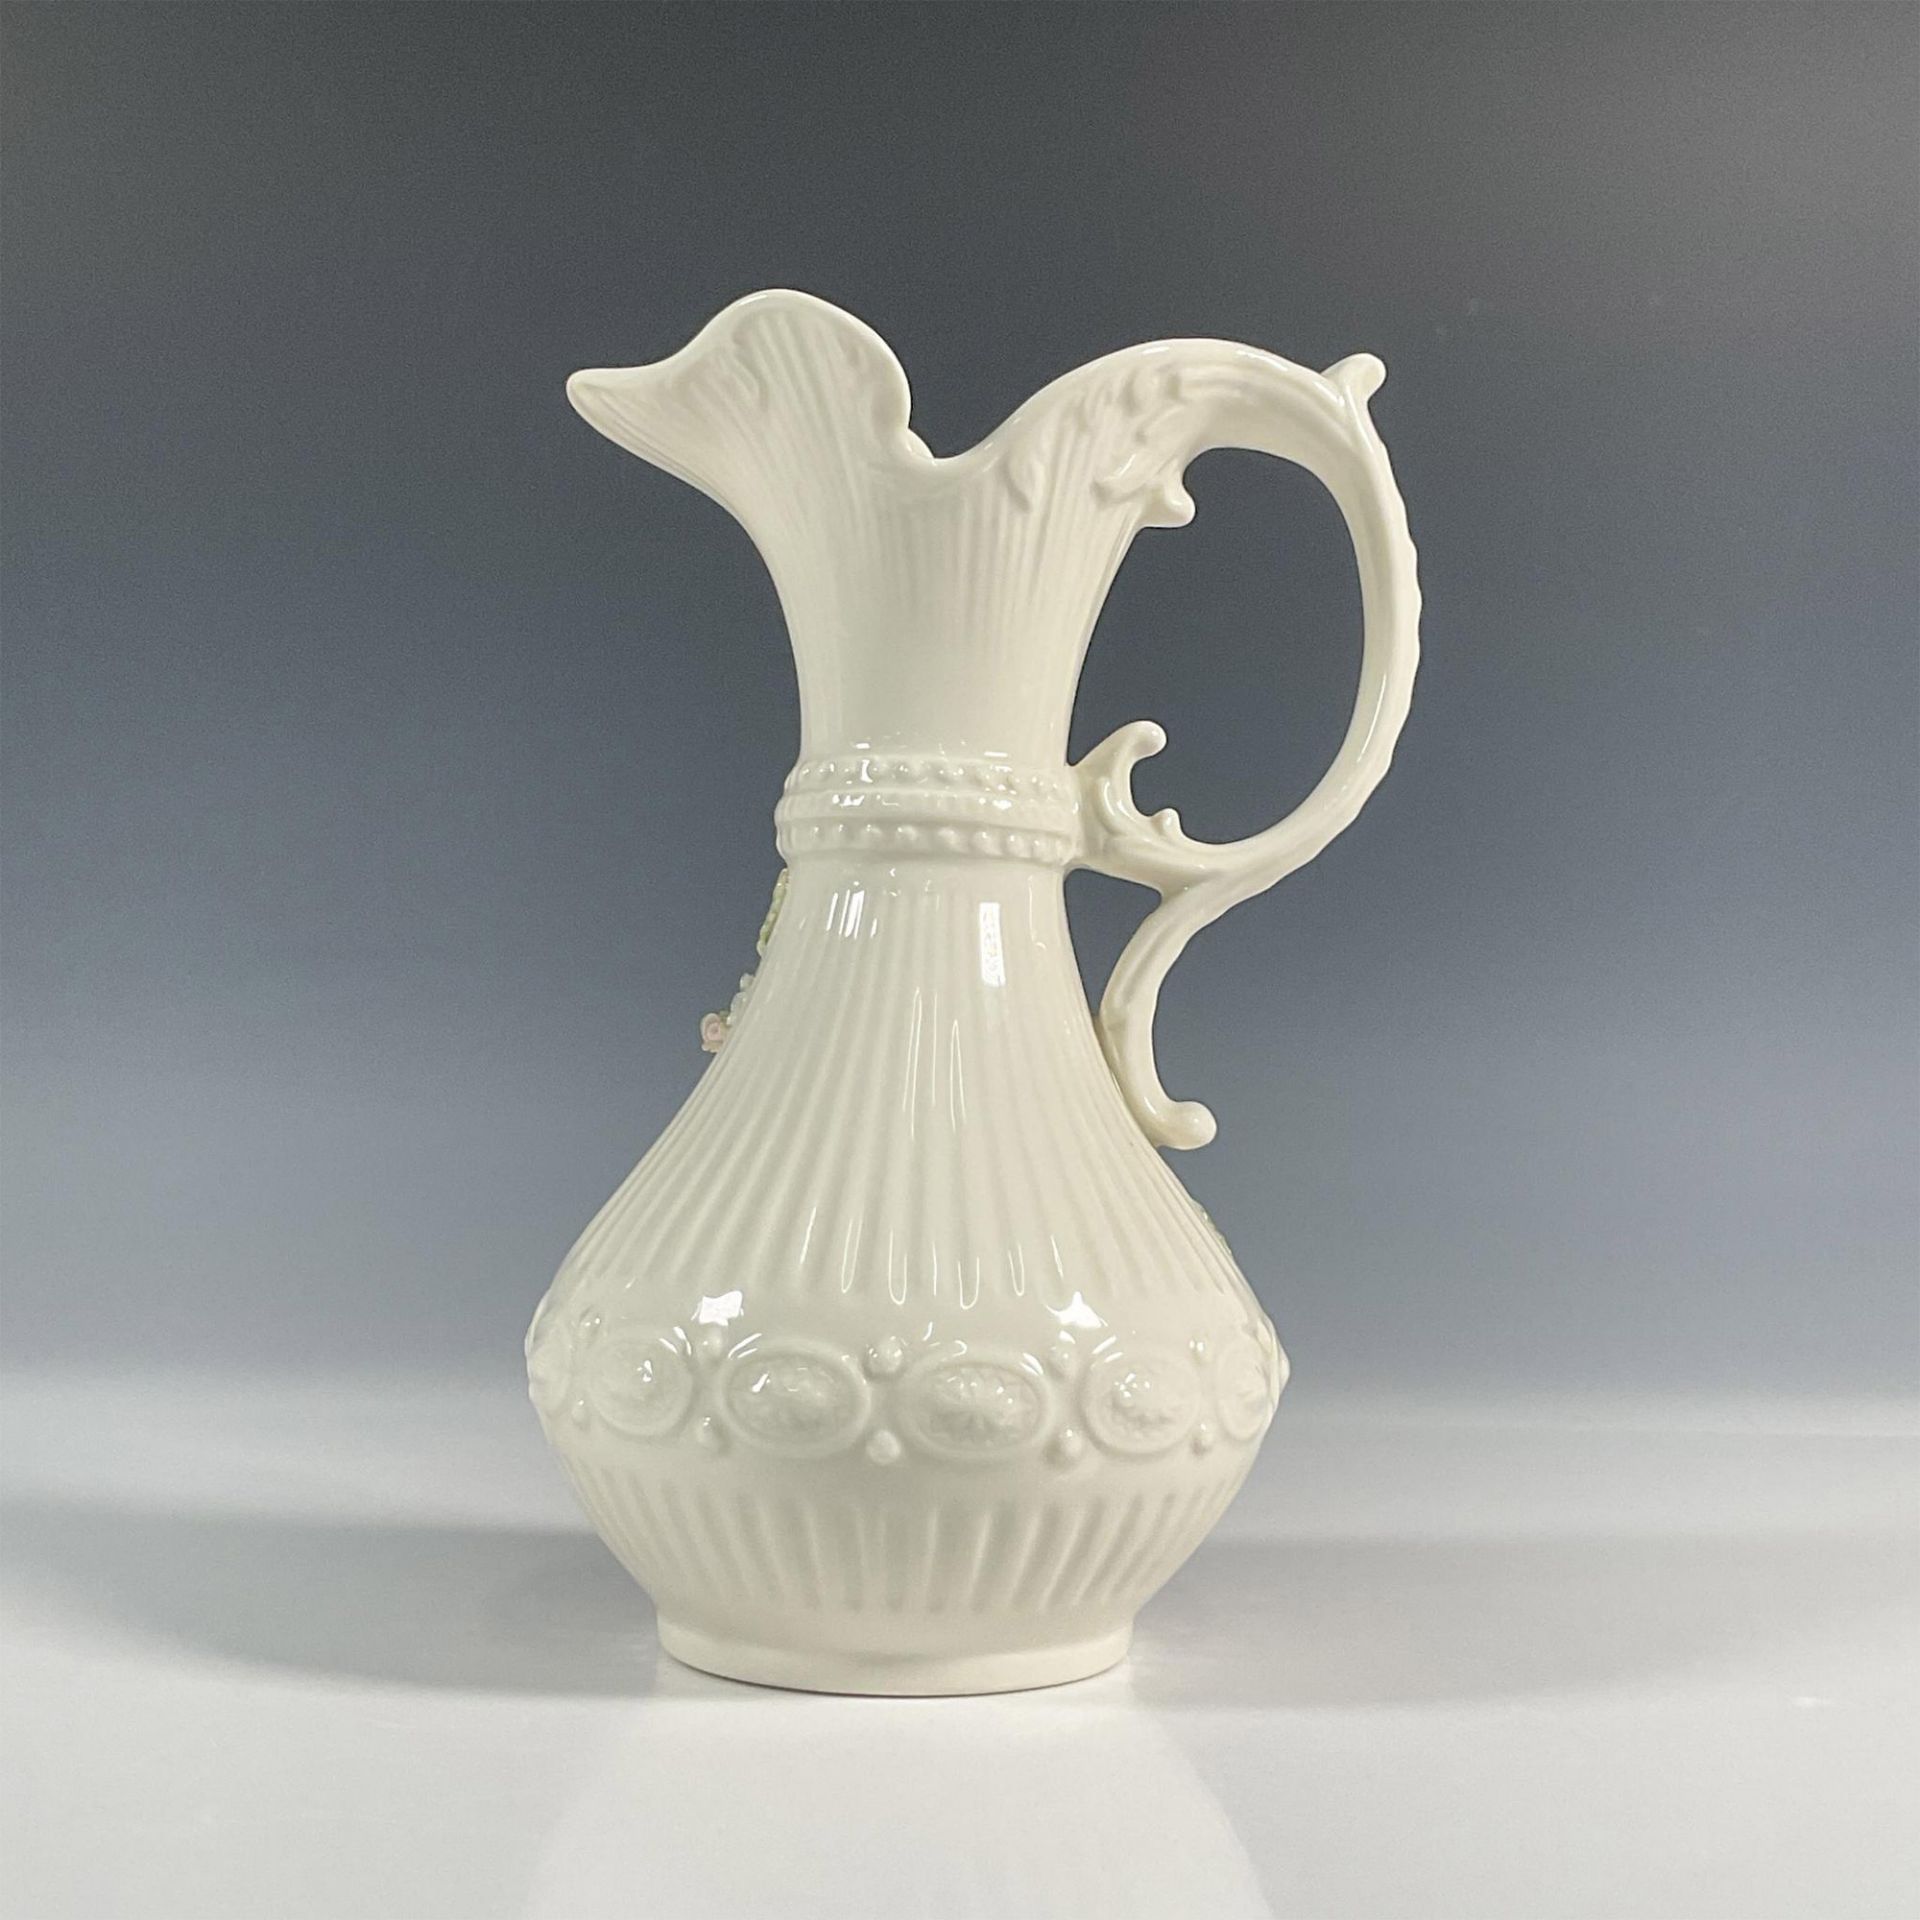 Belleek Pottery Porcelain Aberdeen Pitcher - Image 2 of 6